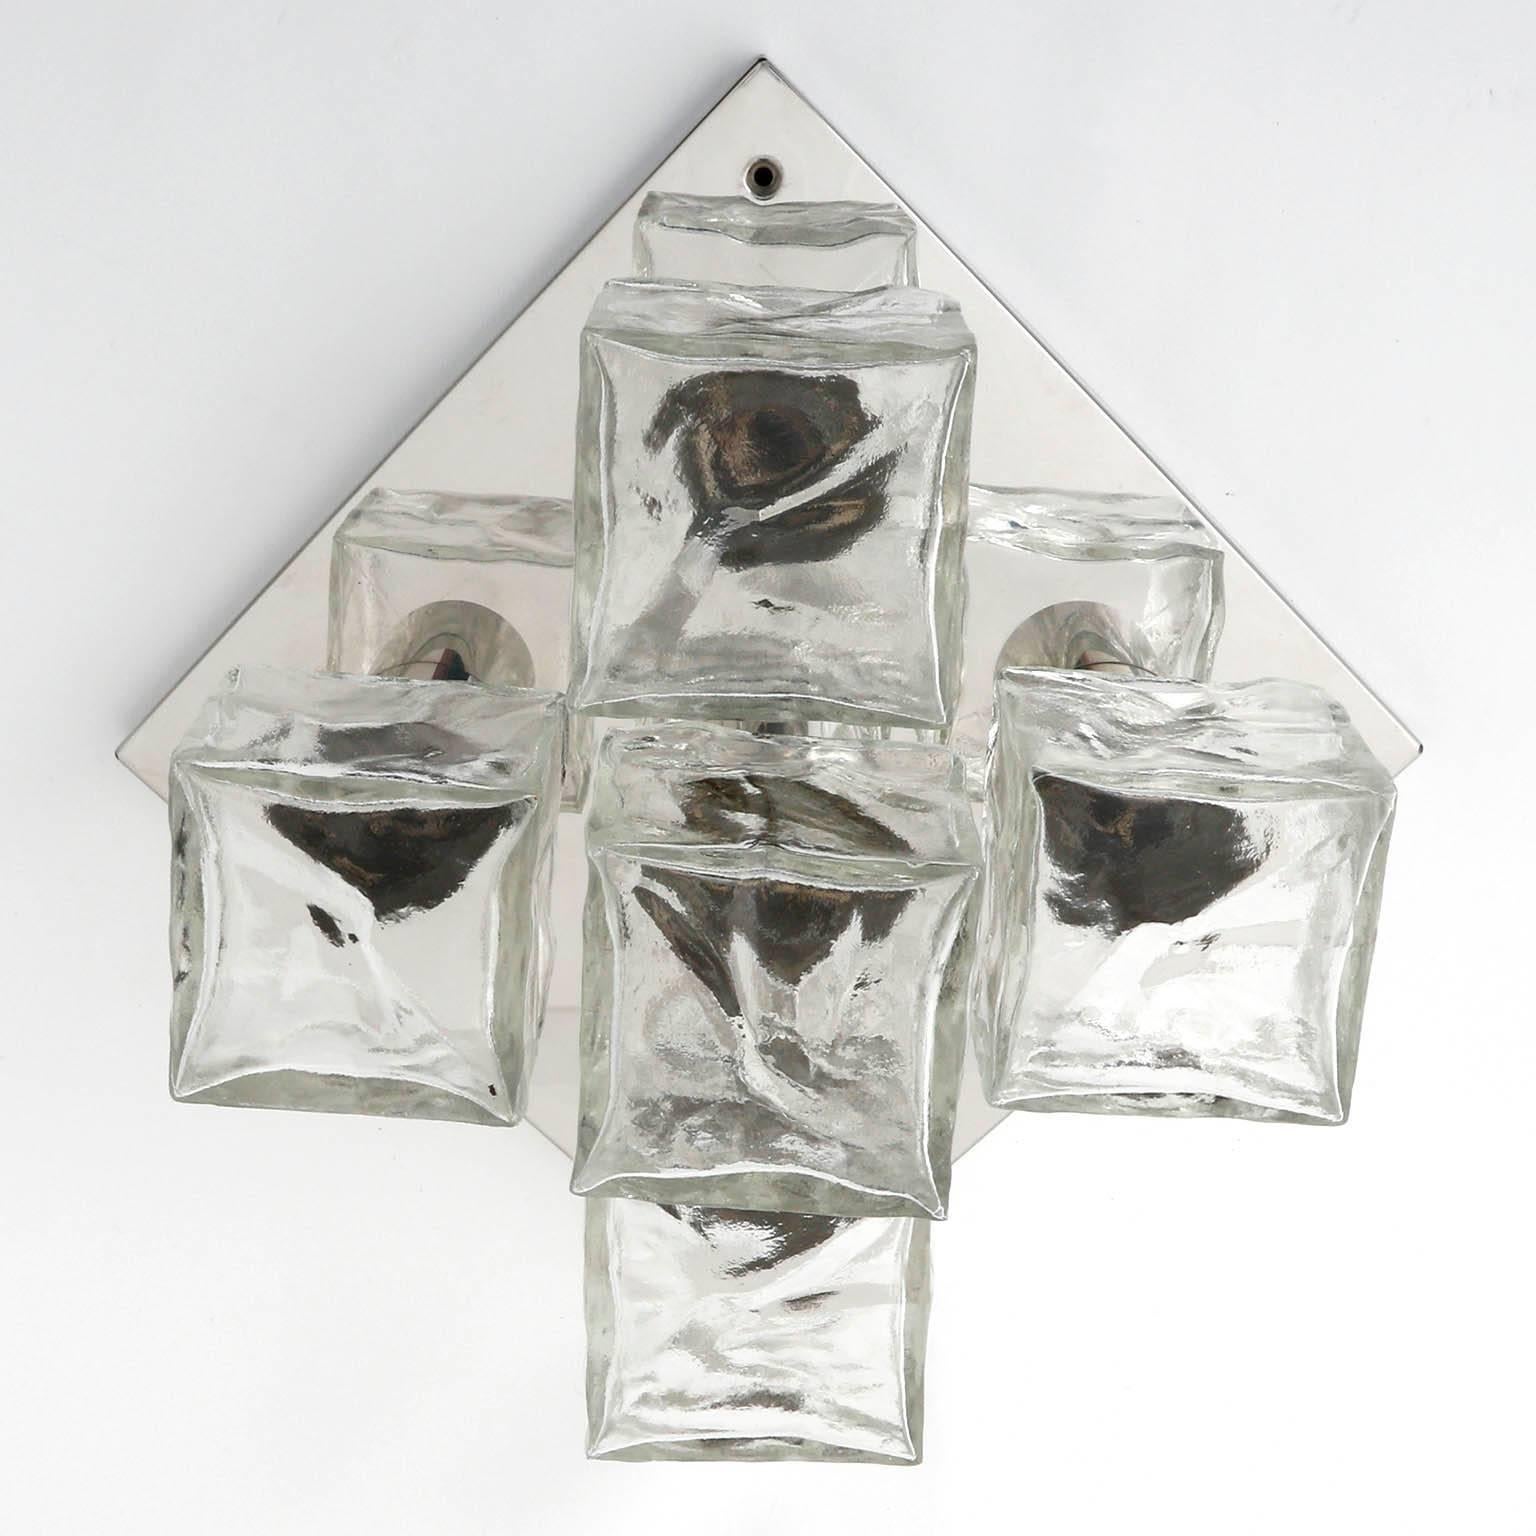 Glass Six Modulare Square Kalmar 'Cubus' Flush Mount Lights or Sconces, Austria, 1970s For Sale